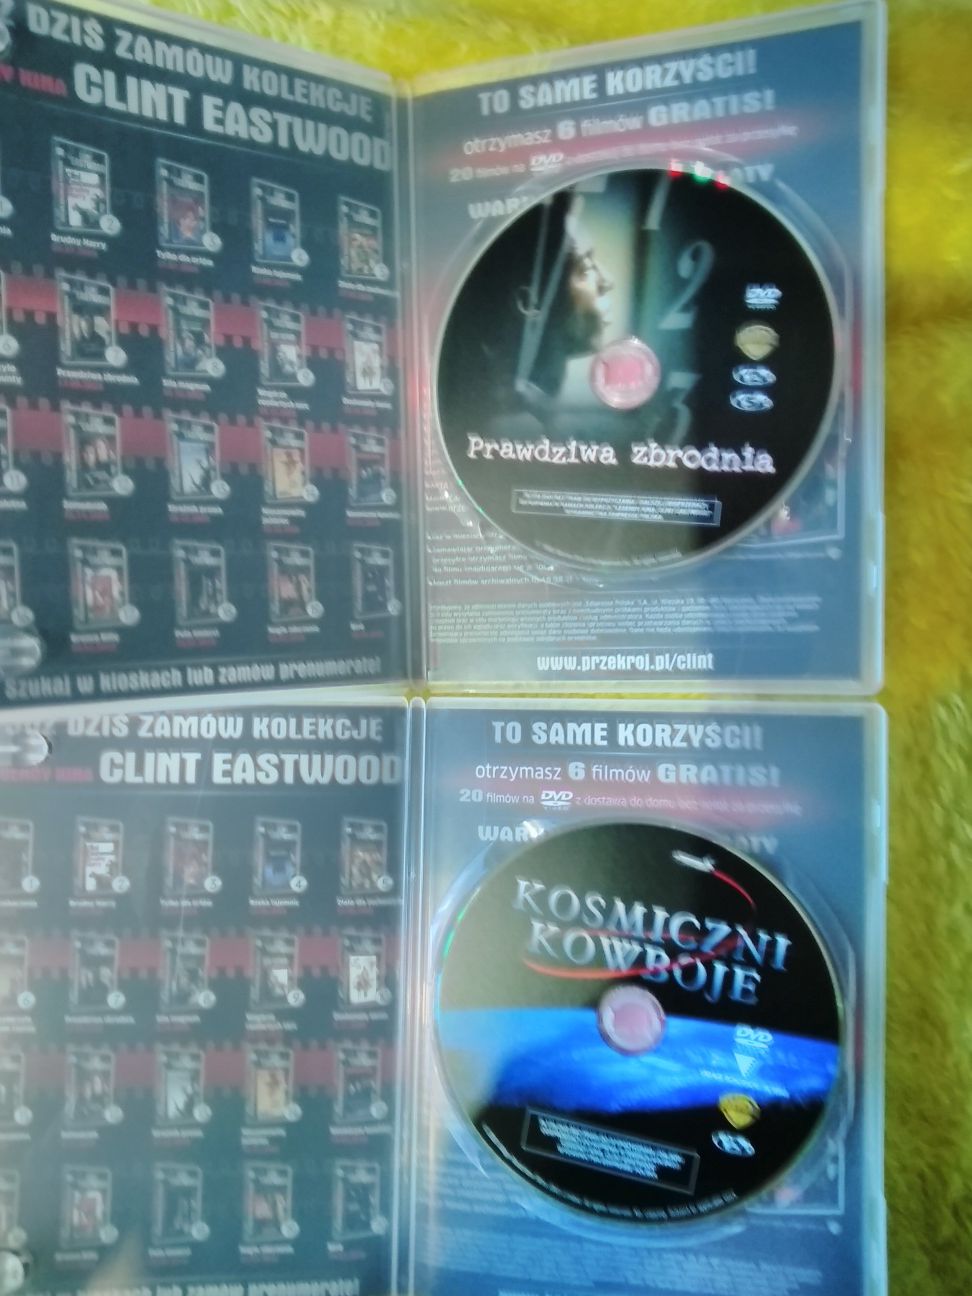 Clint Eastwood, DVD filmy Kosmiczni kowboje i Prawdziwa zbrodnia.